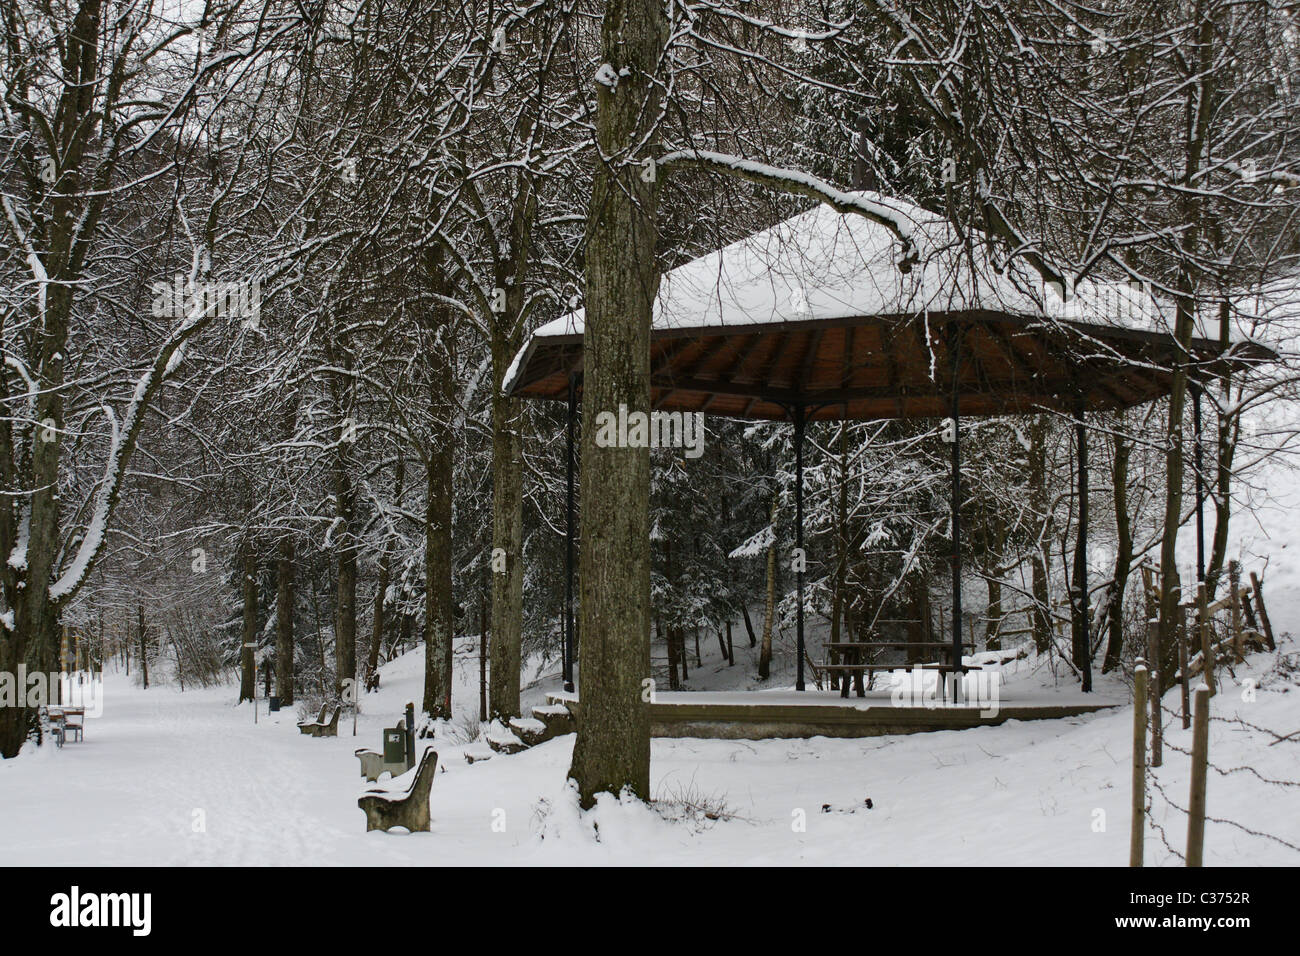 SONY DSC Empty music  pavilion in winter in a park in Feldkirch Austria Stock Photo